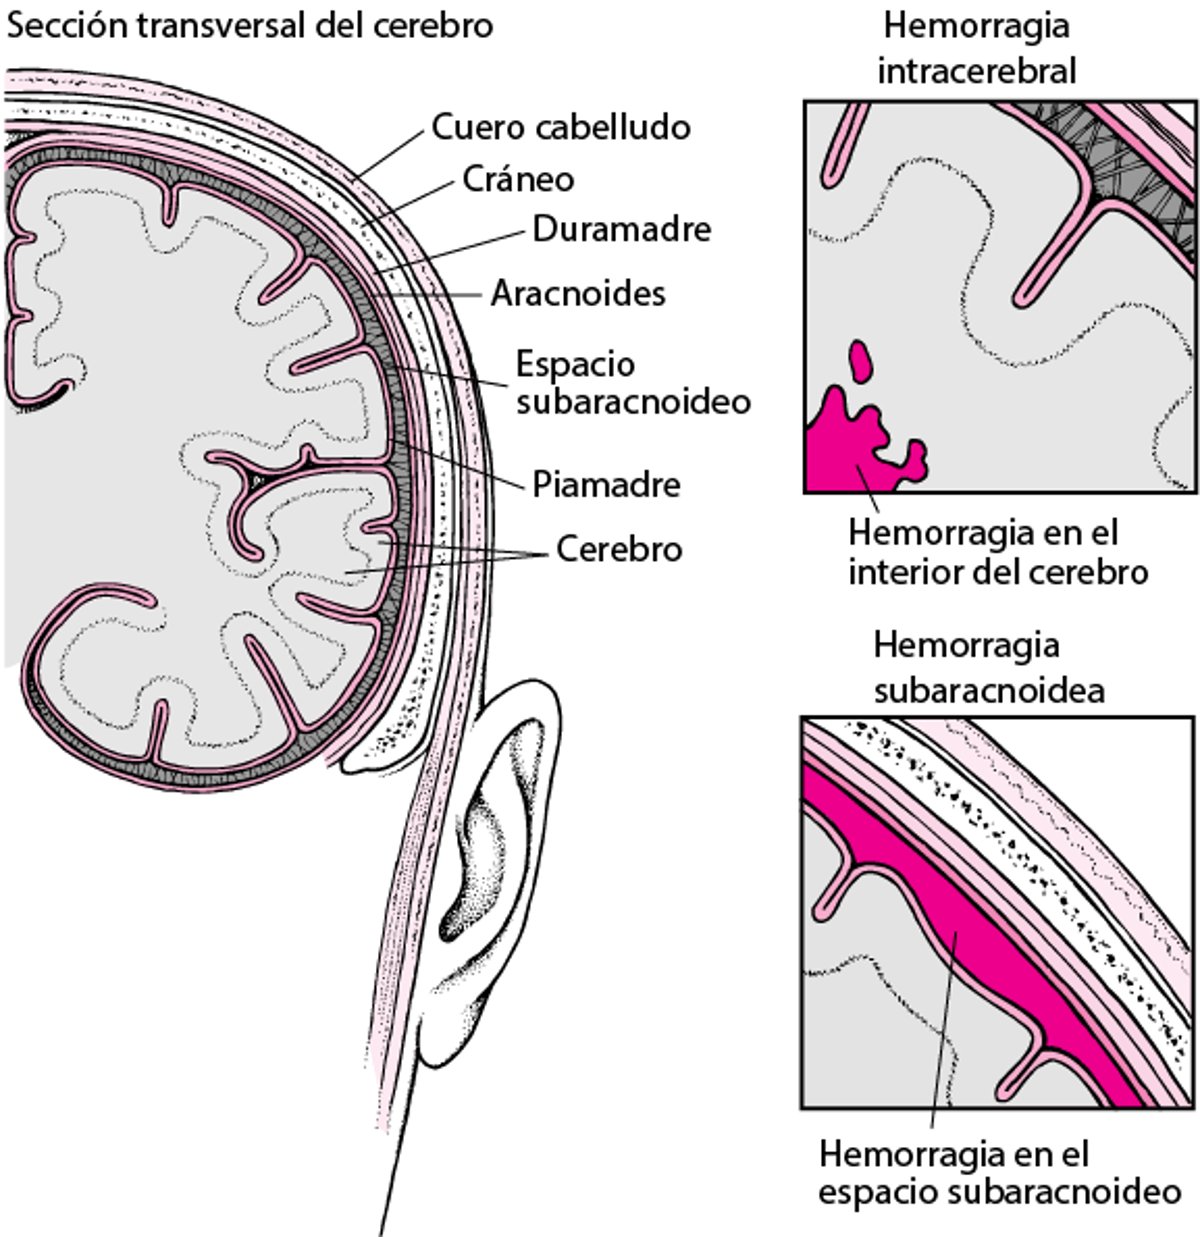 Estallidos y roturas: causas del accidente cerebrovascular hemorrágico (derrame cerebral o ictus hemorrágico)